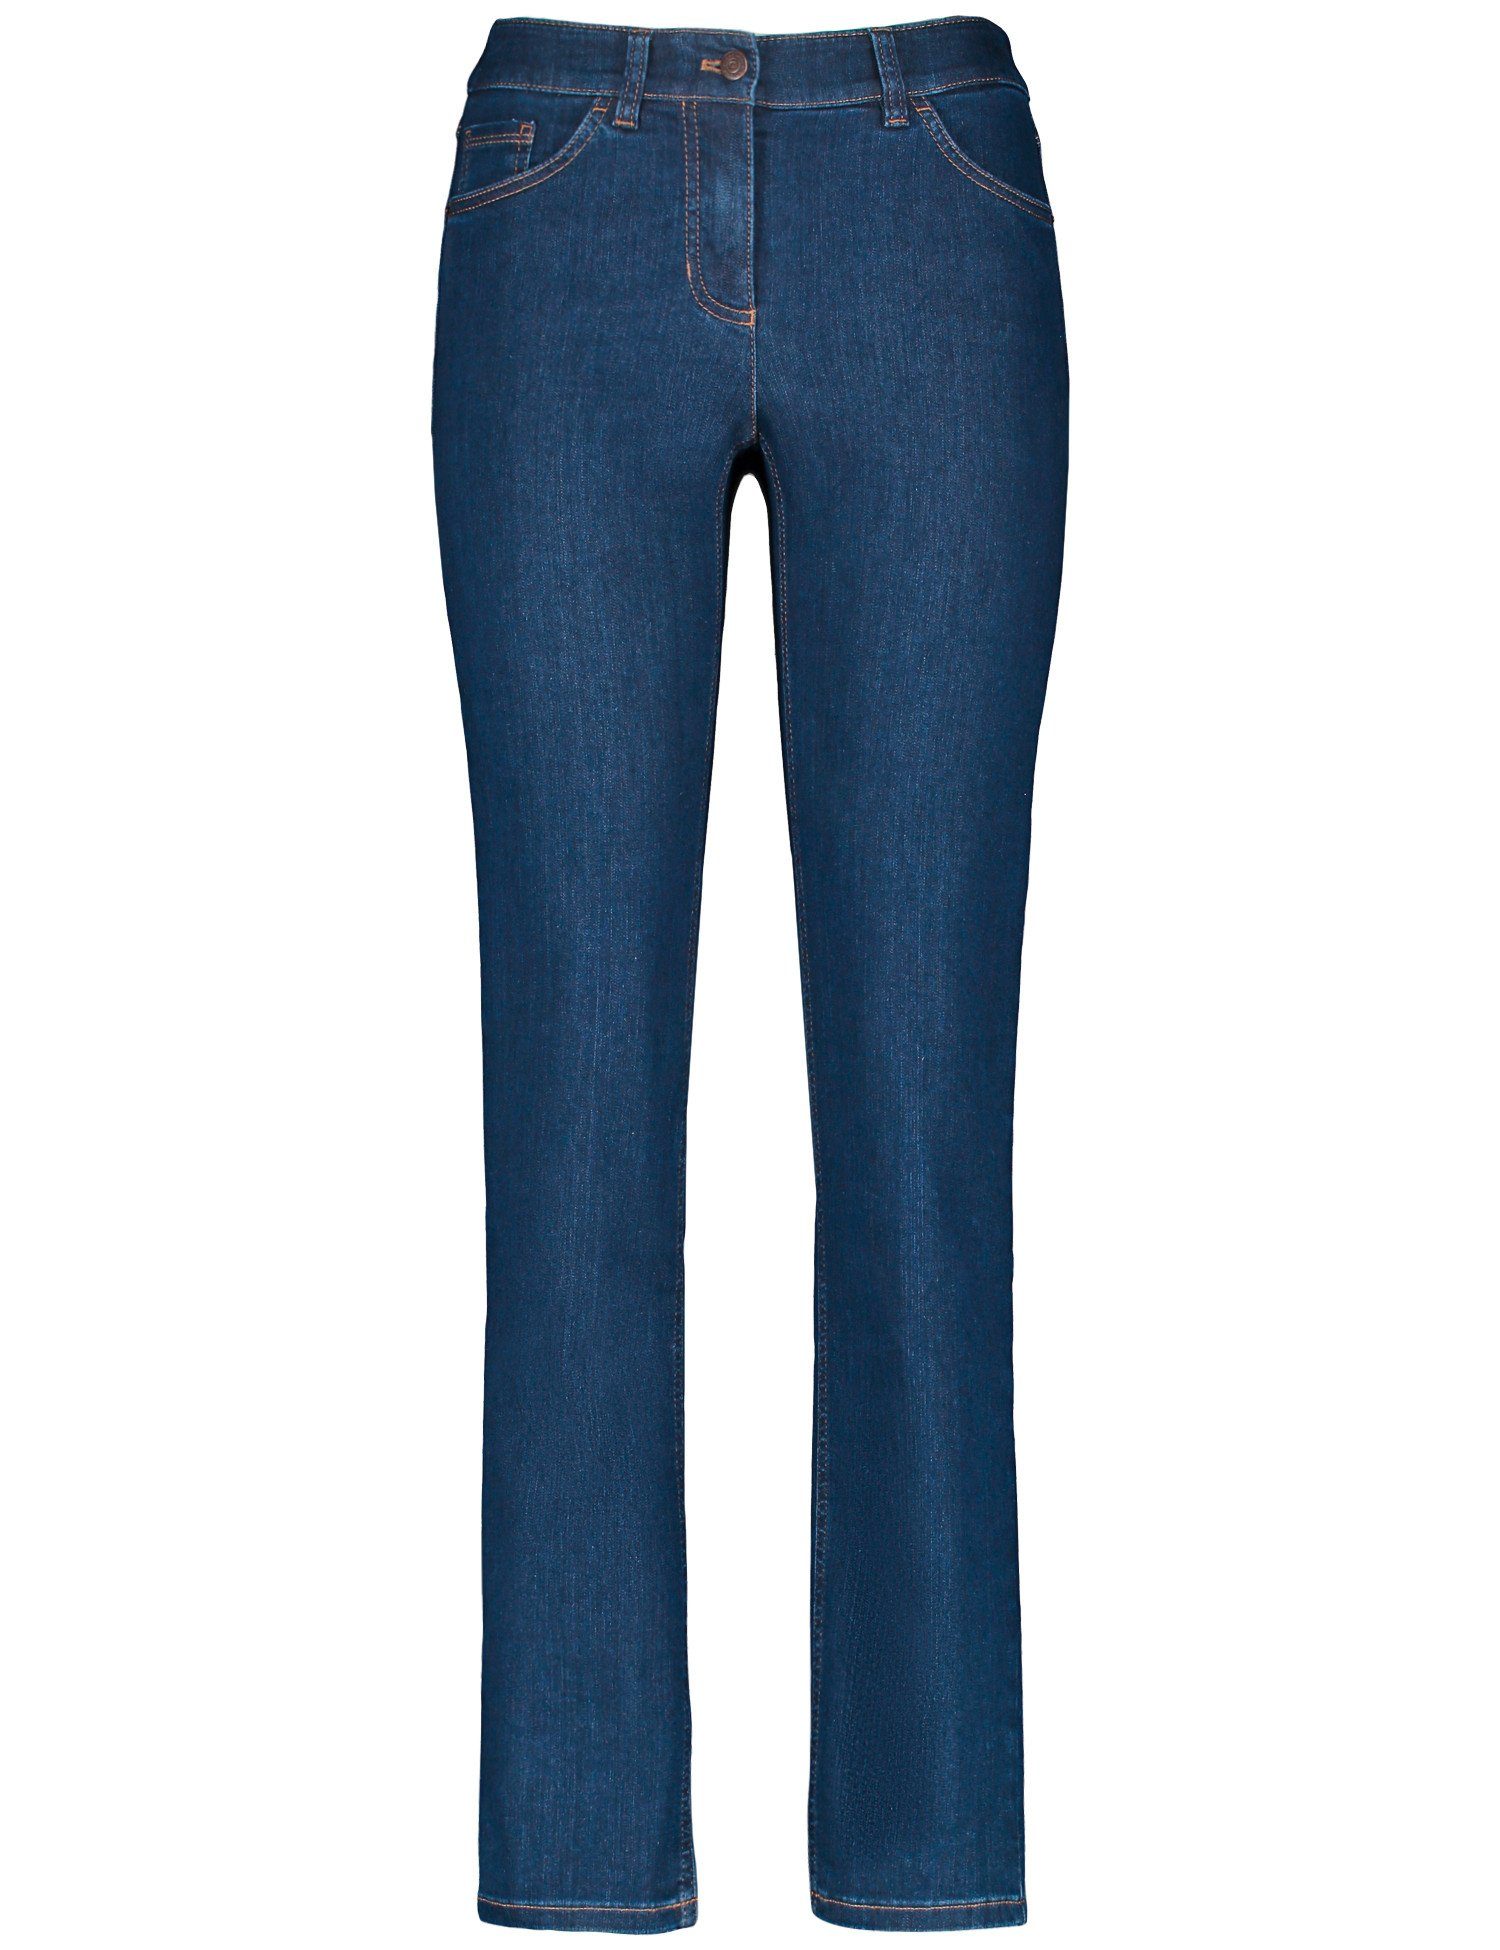 GERRY WEBER Stretch-Jeans 5-Pocket Jeans Denim Slimfit Blue Best4me